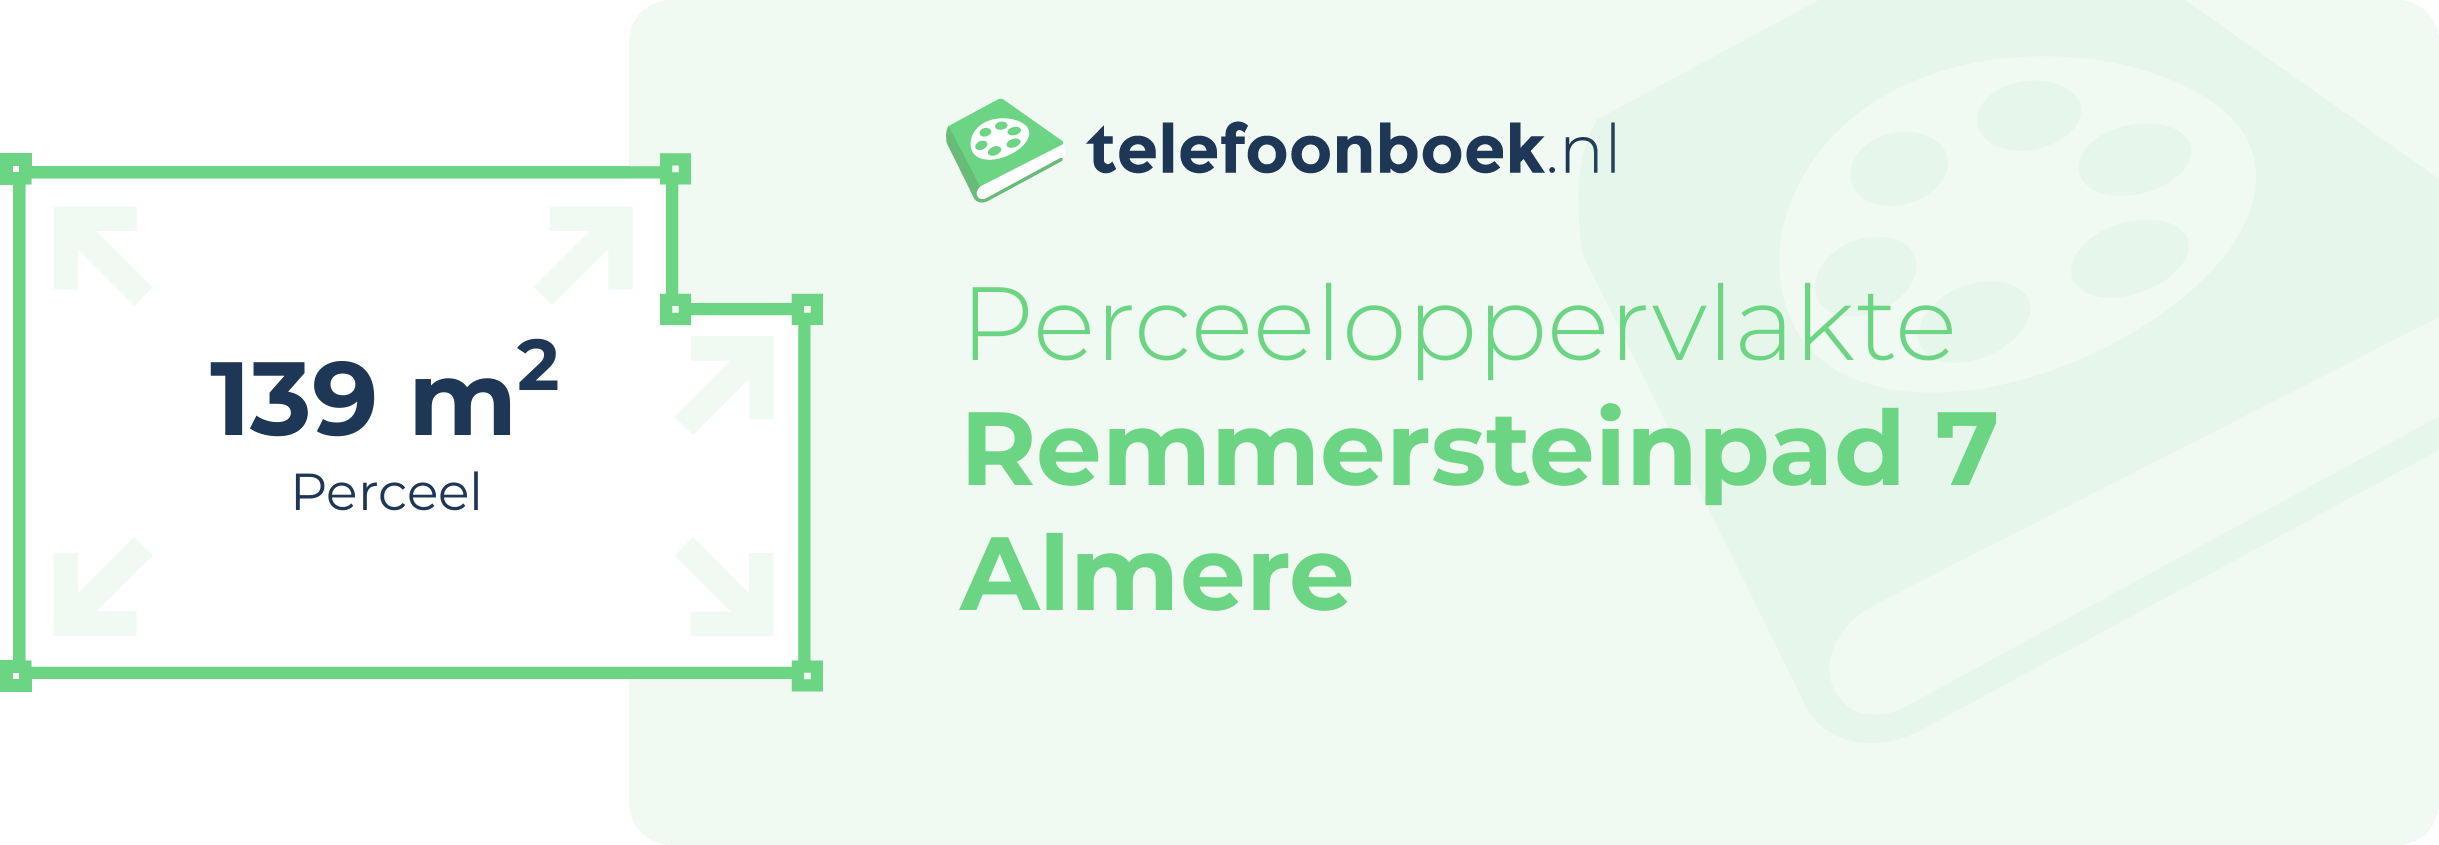 Perceeloppervlakte Remmersteinpad 7 Almere